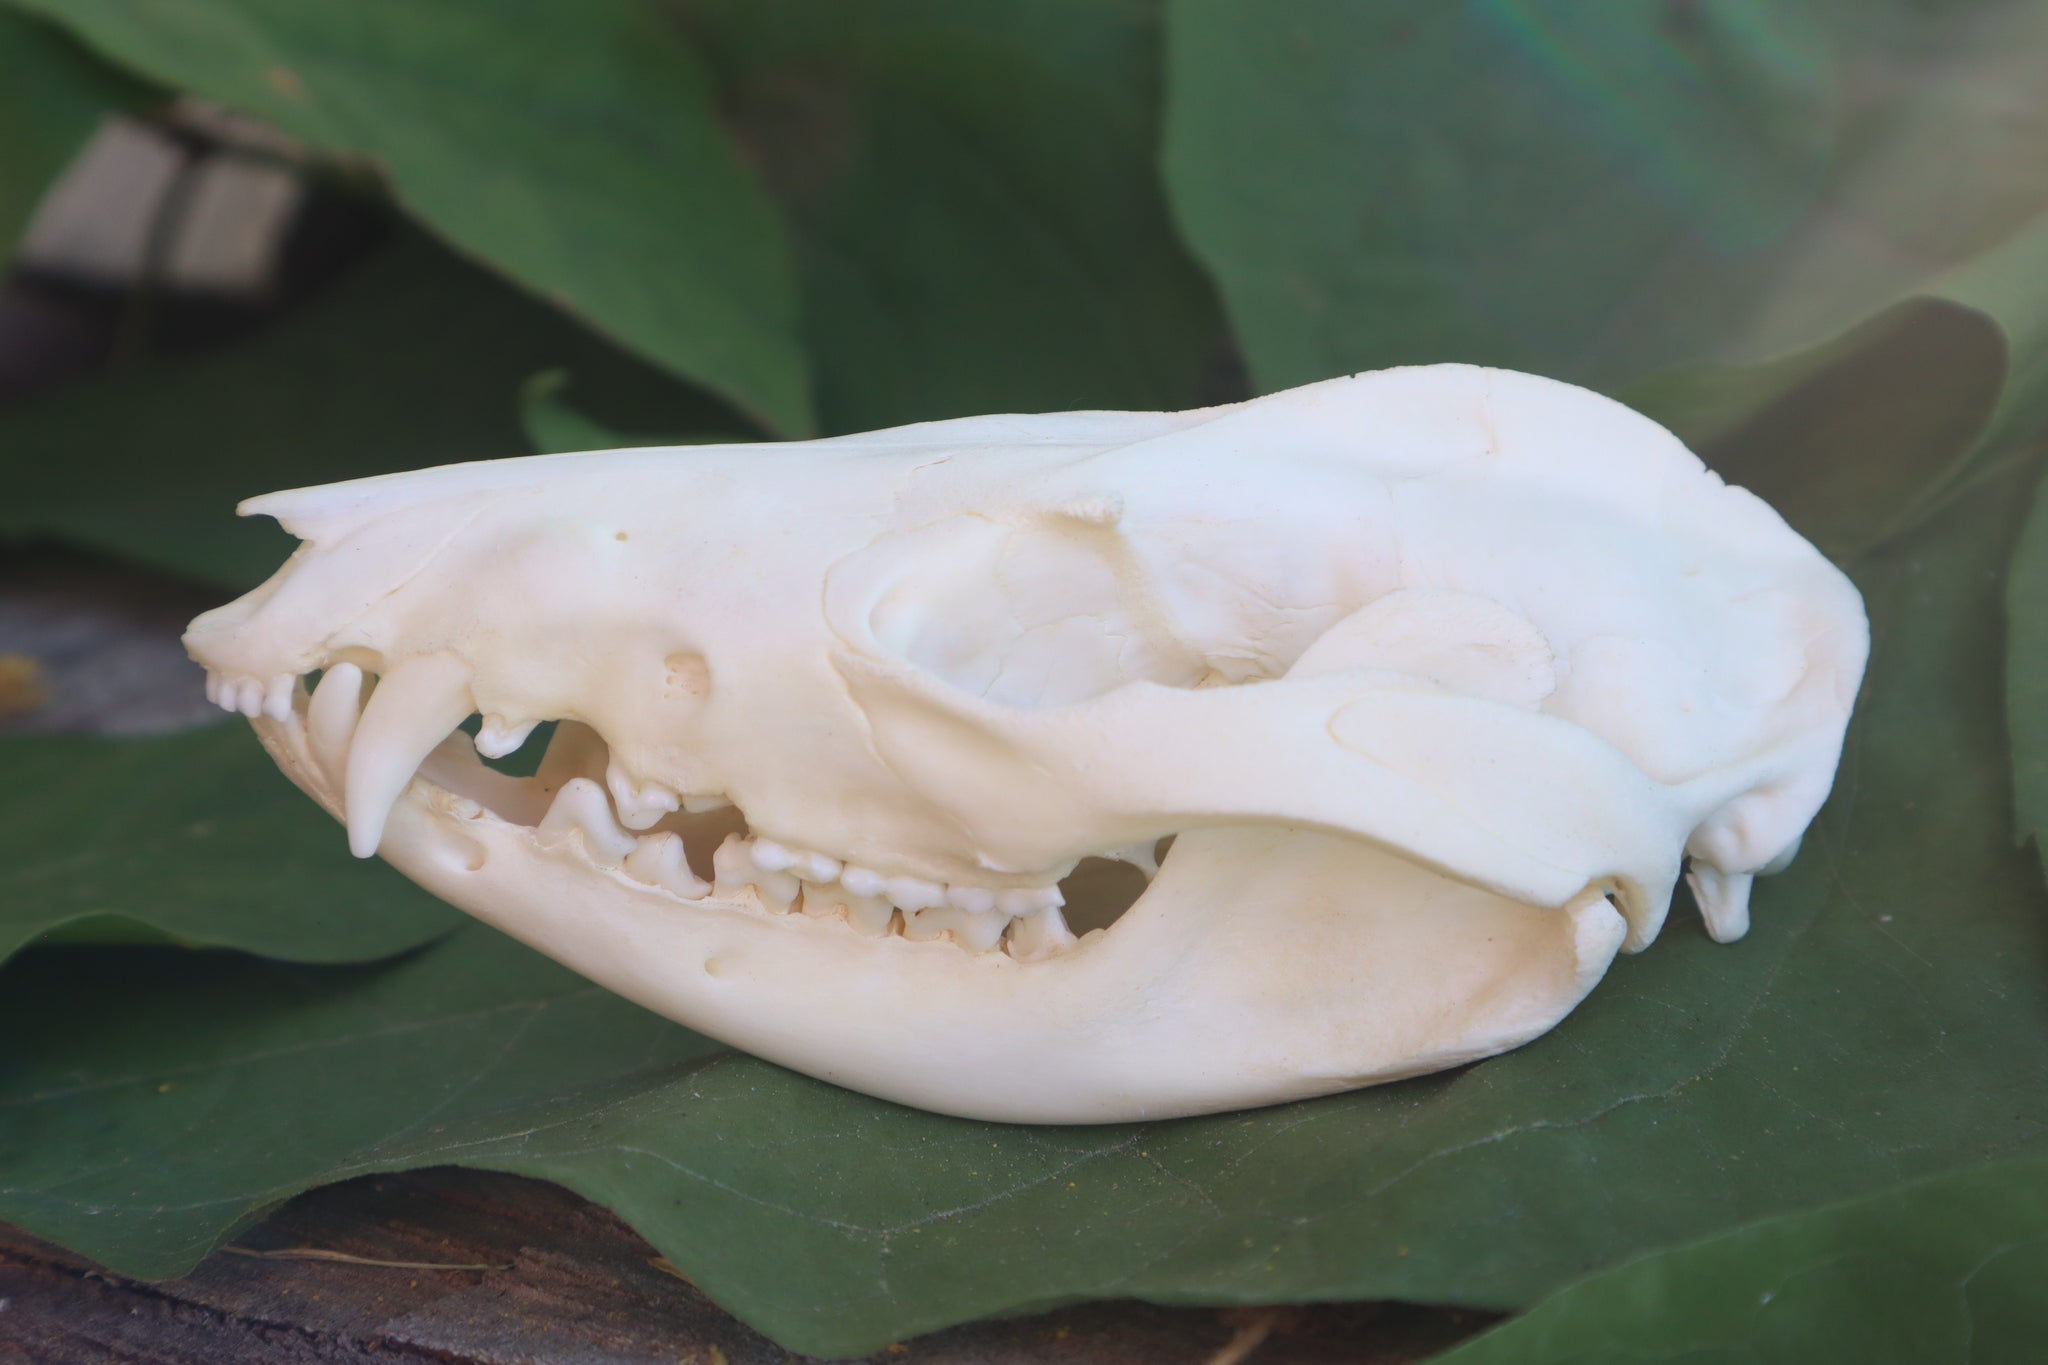 Opossum Skull and Atlas Vertebrae